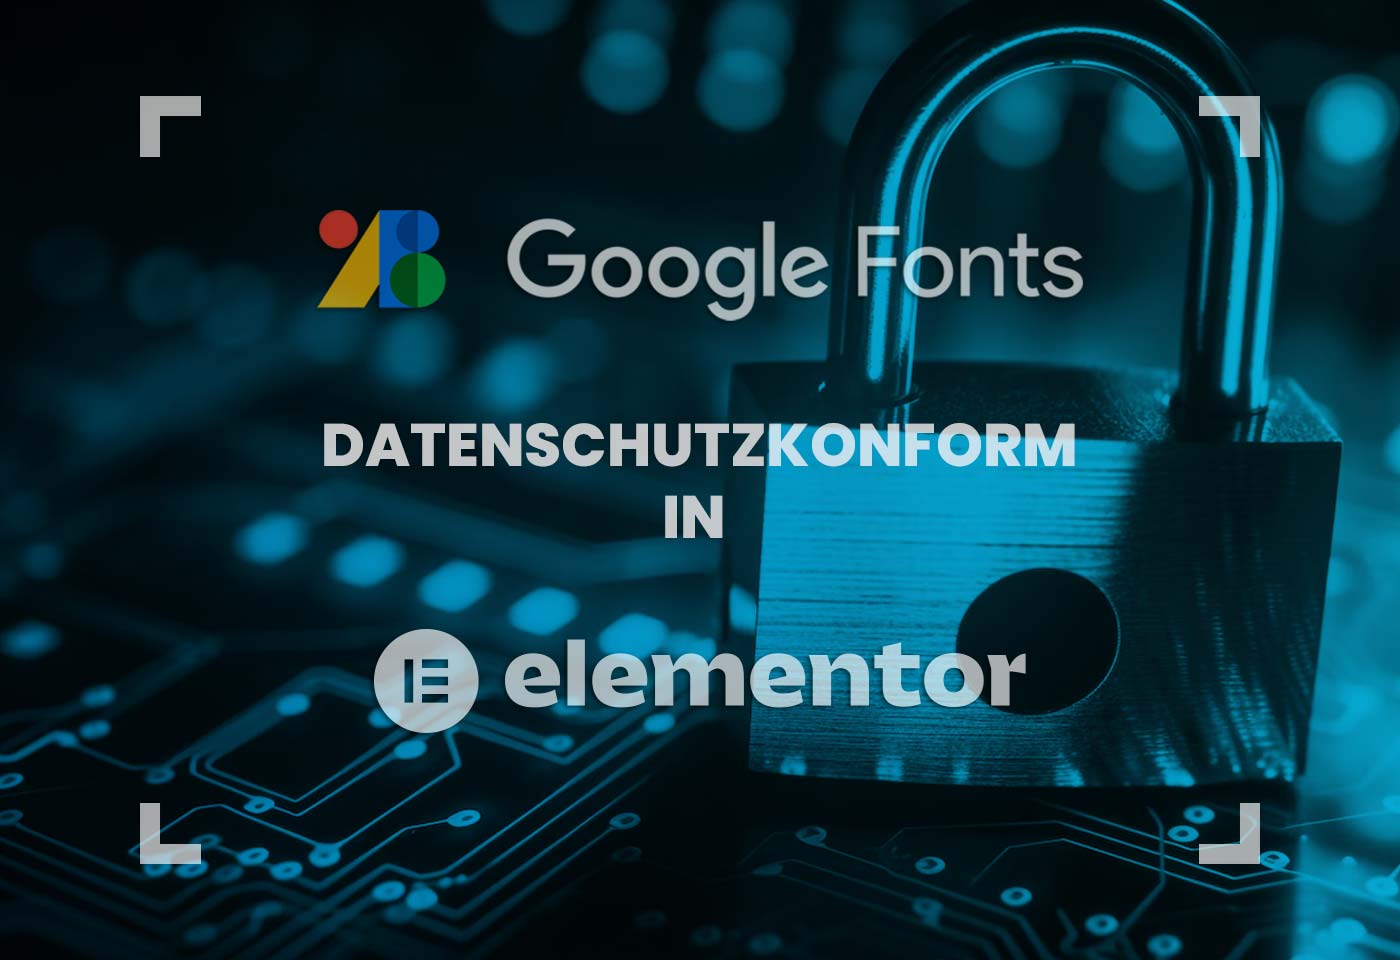 google-fonts-datenschutzkonform-mit-elementor-verwenden